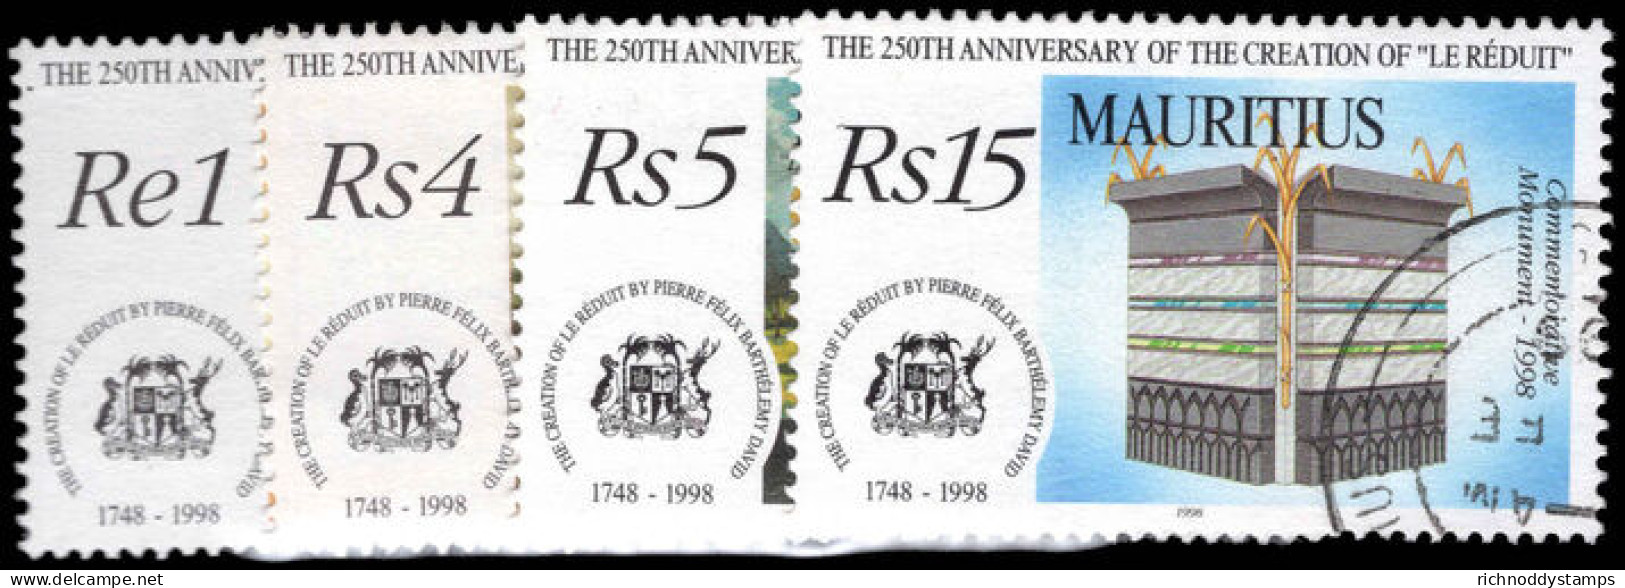 Mauritius 1998 250th Anniv Of Chateau Le Reduit Fine Used. - Mauritius (1968-...)